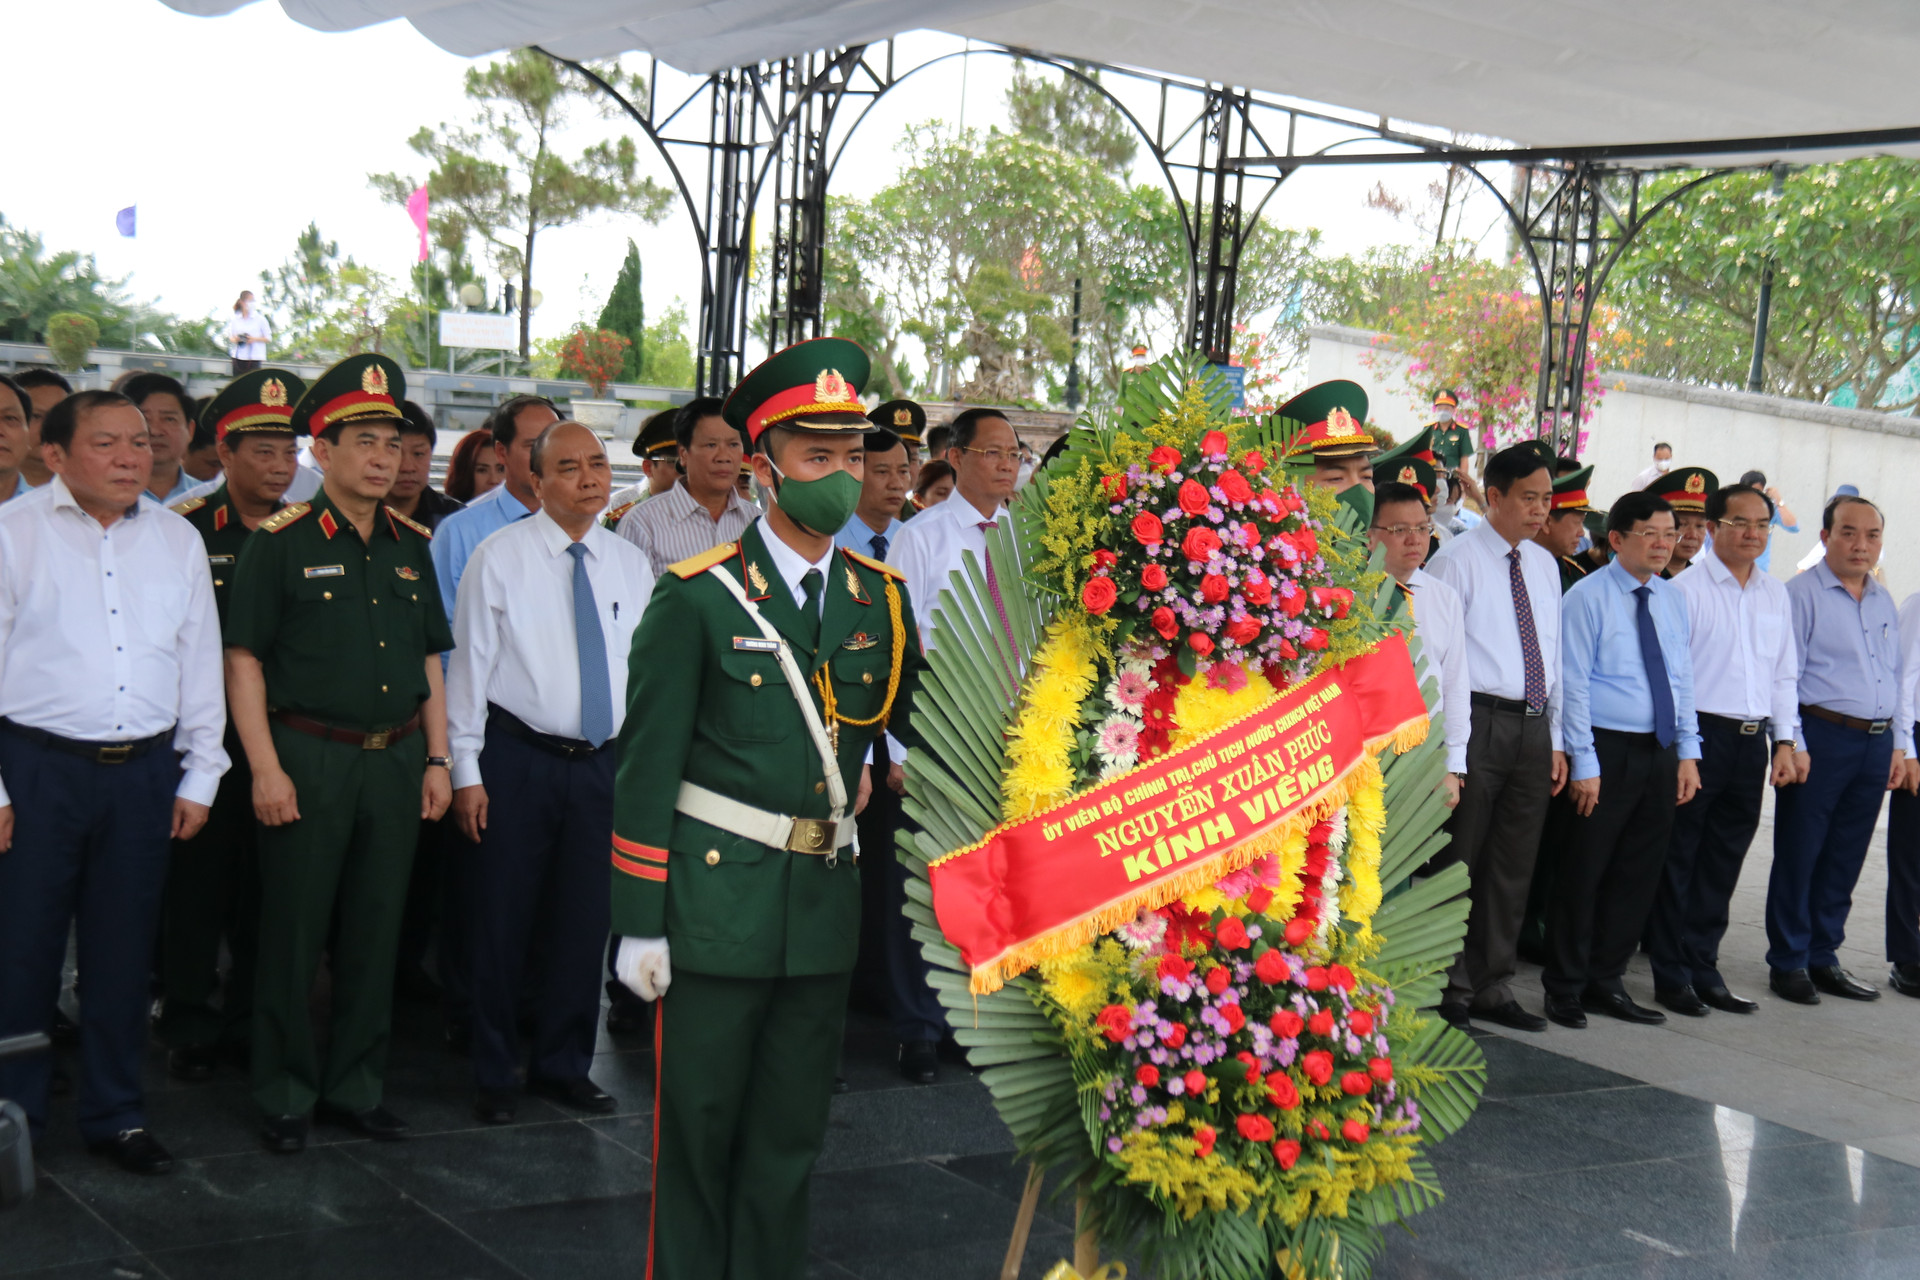 Chủ tịch nước và các đồng chí lãnh đạo Trung ương, địa phương đã đến dâng hương, dâng hoa viếng các anh hùng liệt sĩ tại Nghĩa Trang Liệt sĩ Quốc gia Trường Sơn và Nghĩa trang Liệt sĩ Quốc gia Đường 9.